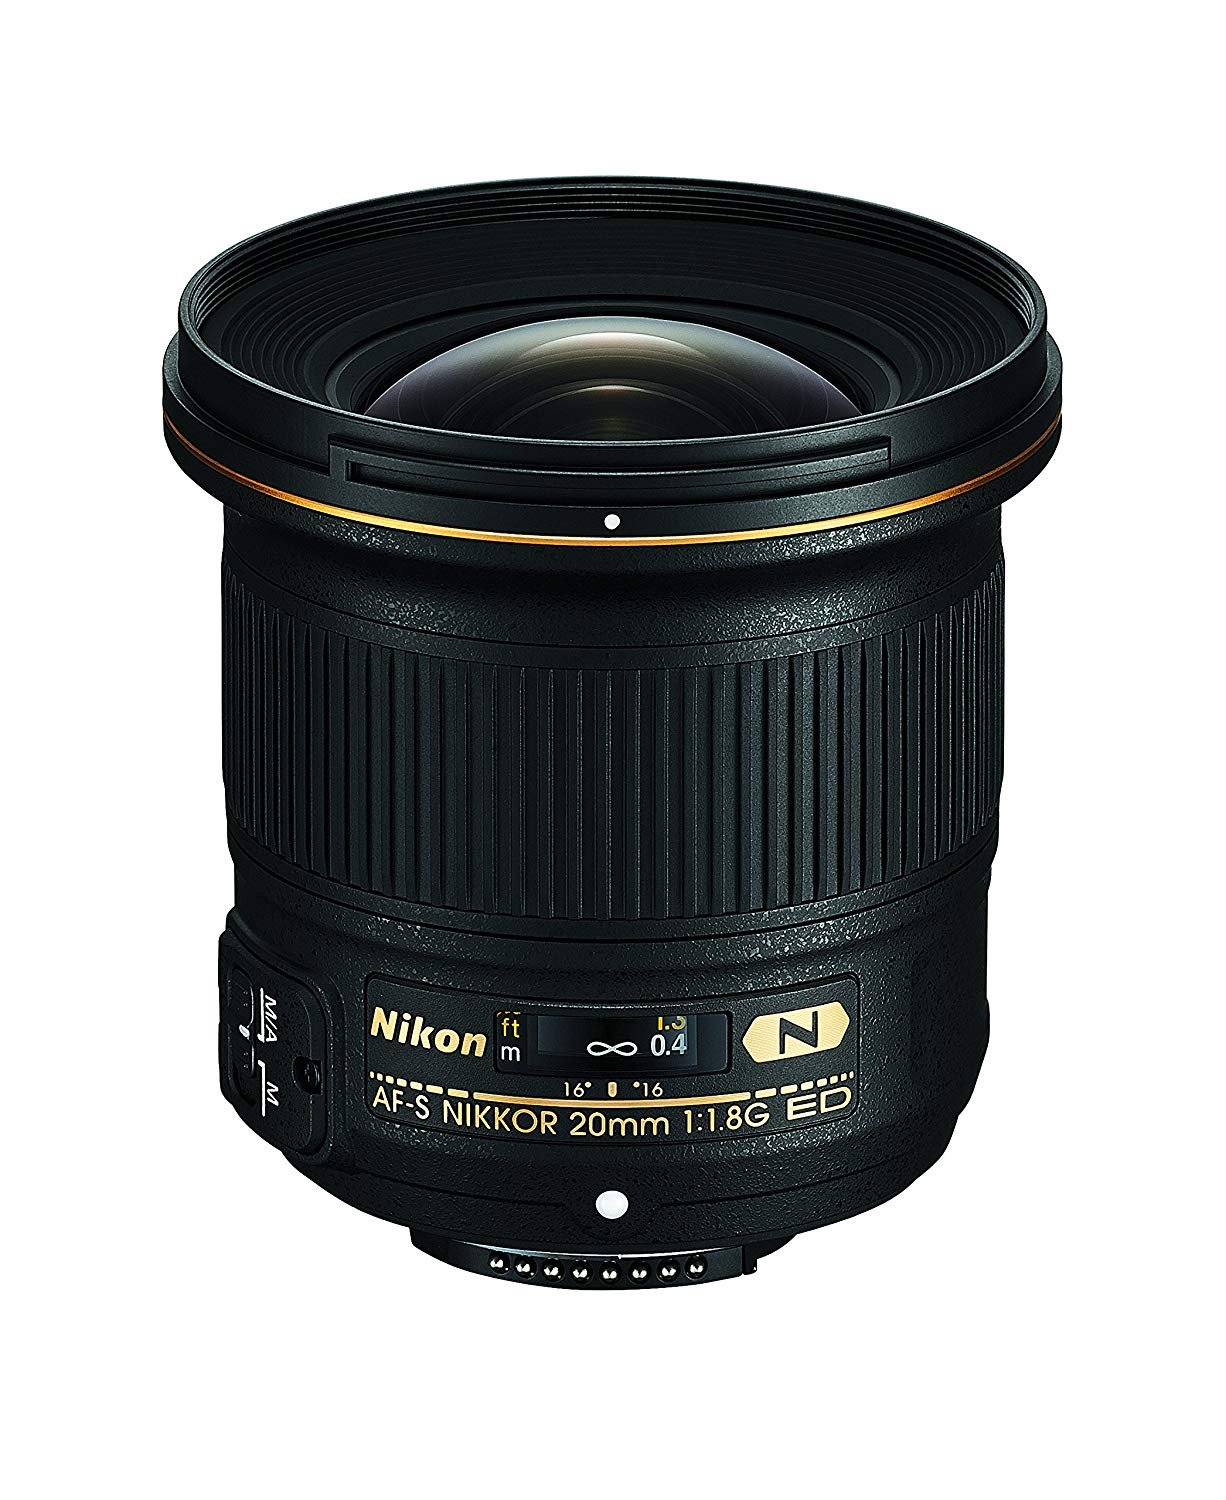 Nikon AF-S FX NIKKOR 20mm f / 1.8G ED Lente fija con enfoque automático para cámaras DSLR